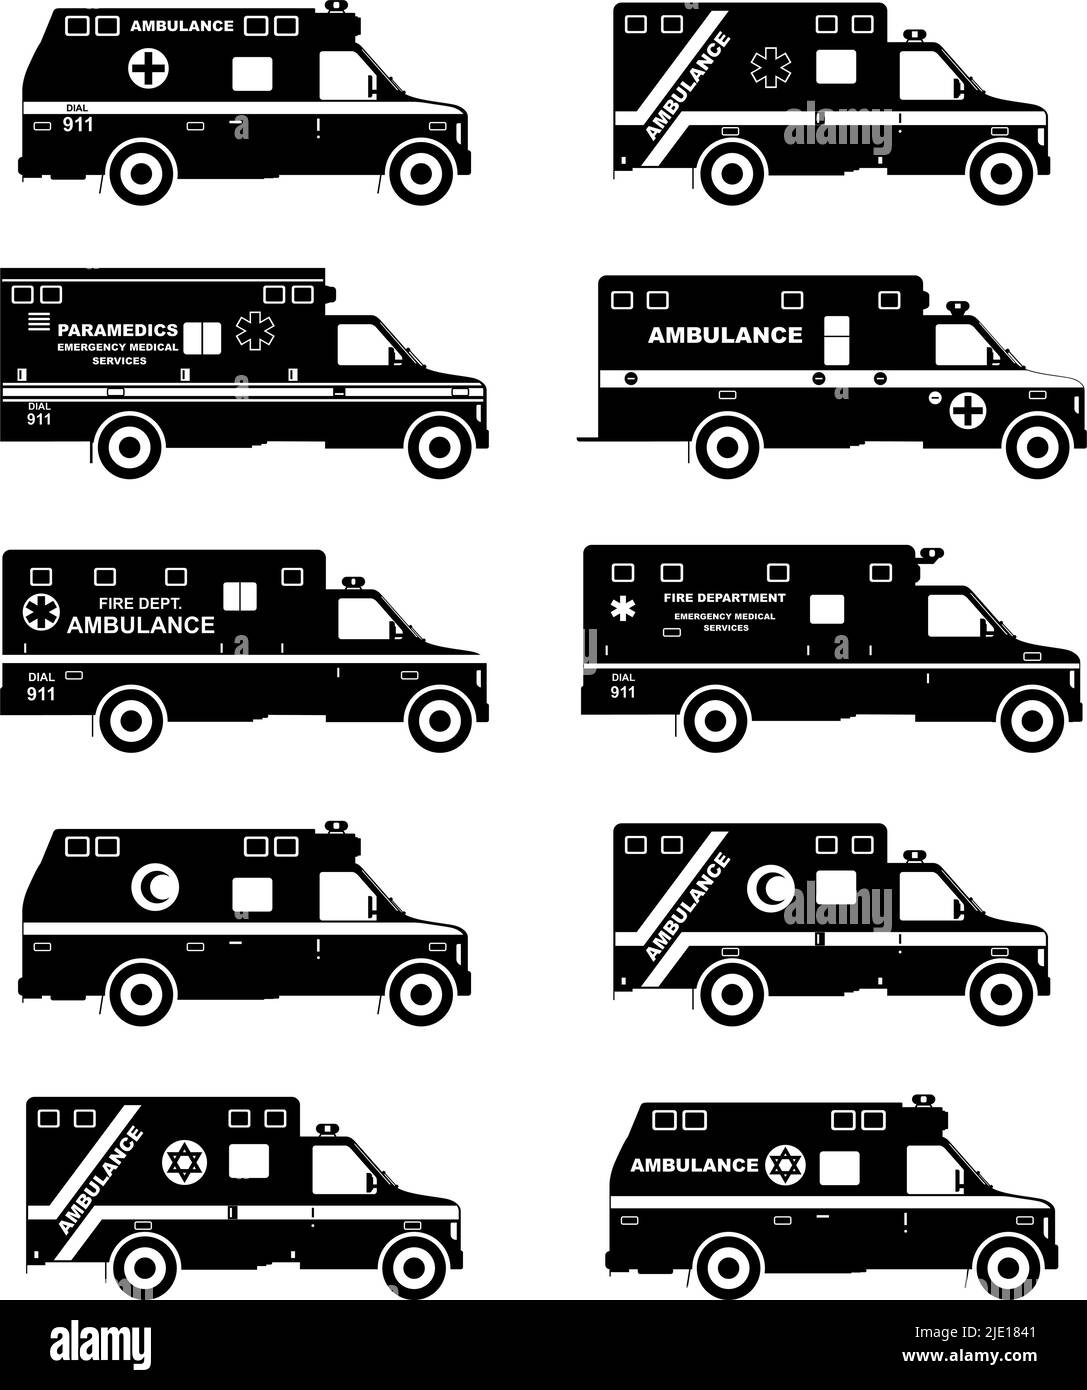 Silhouettes illustration des ambulances automobiles israéliennes, musulmanes, américaines et européennes de style plat sur fond blanc. Voitures de service d'urgence. Vecteur illus Illustration de Vecteur